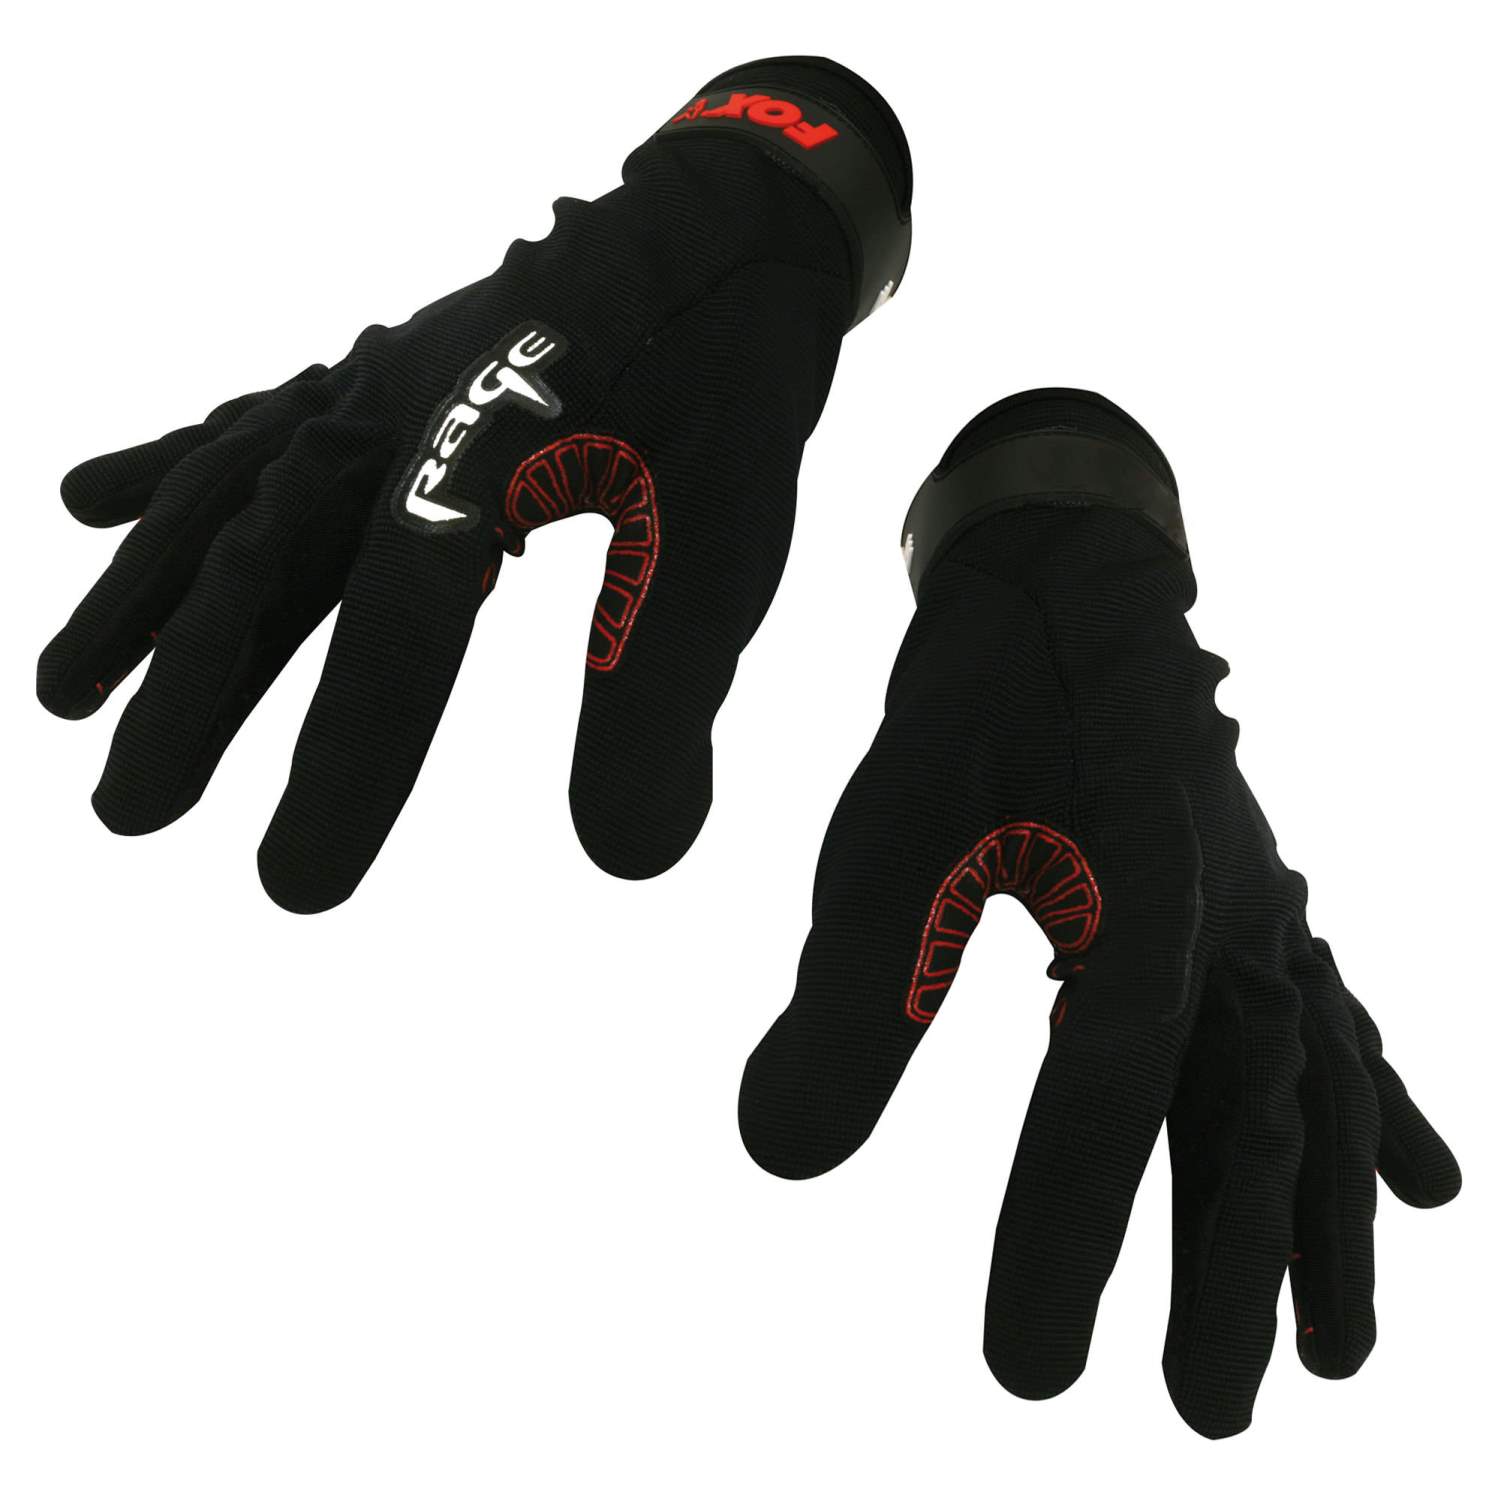 Winter Handschuhe für Touchscreen Raubfisch Fox Rage Thermal Camo Gloves 